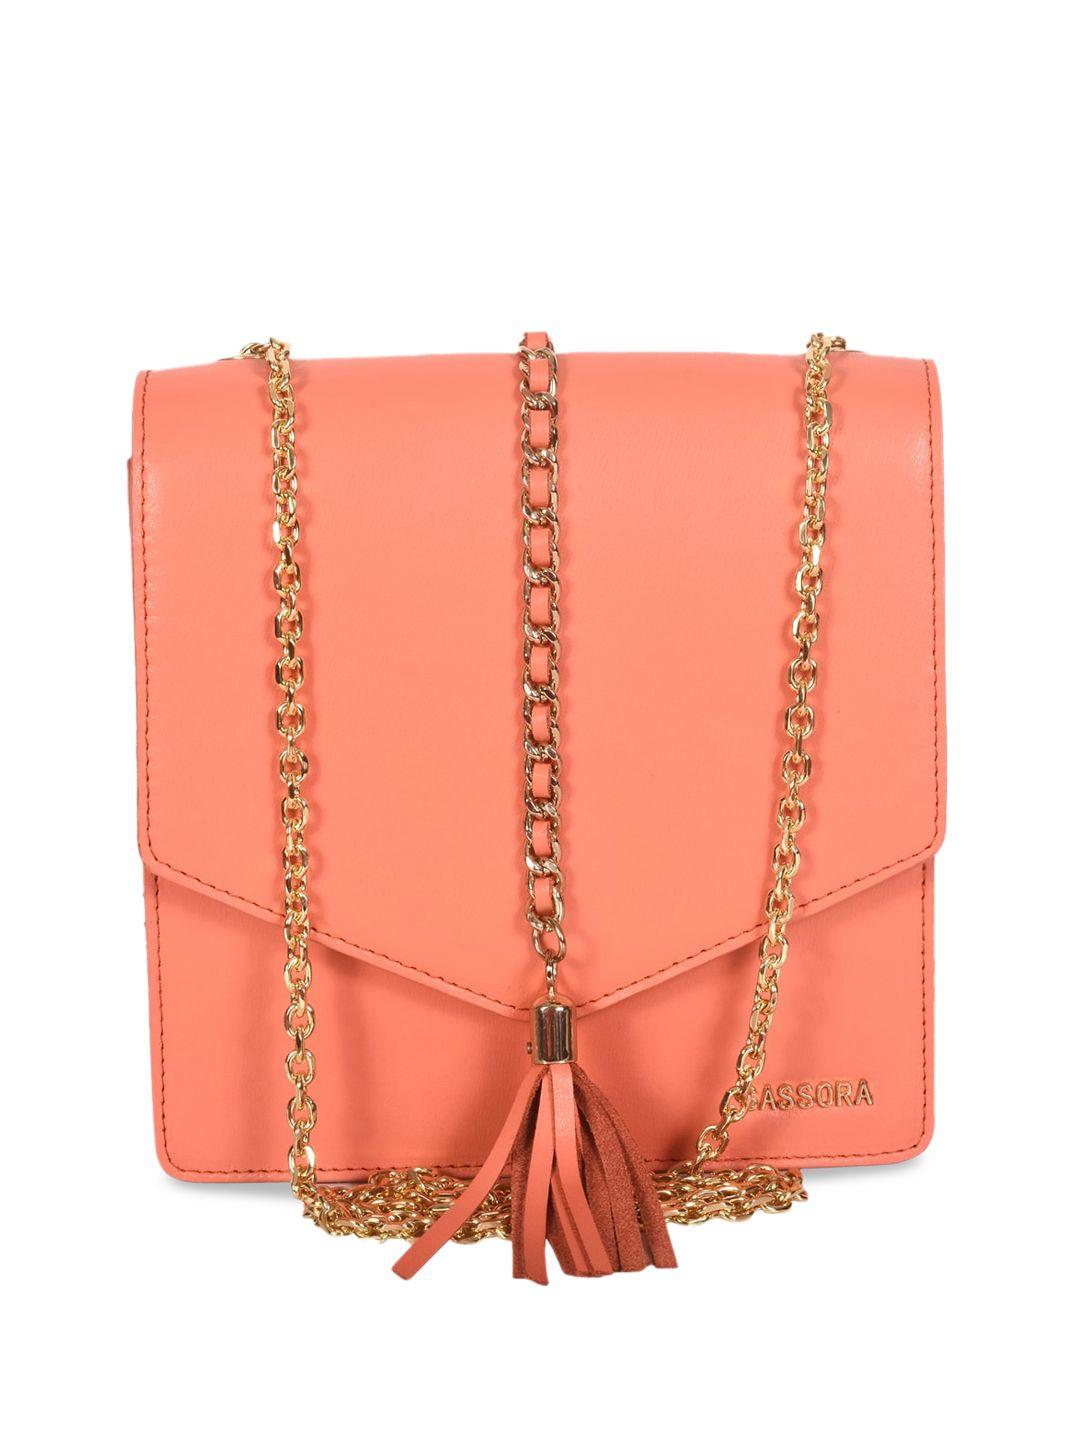 sassora coral leather structured sling bag